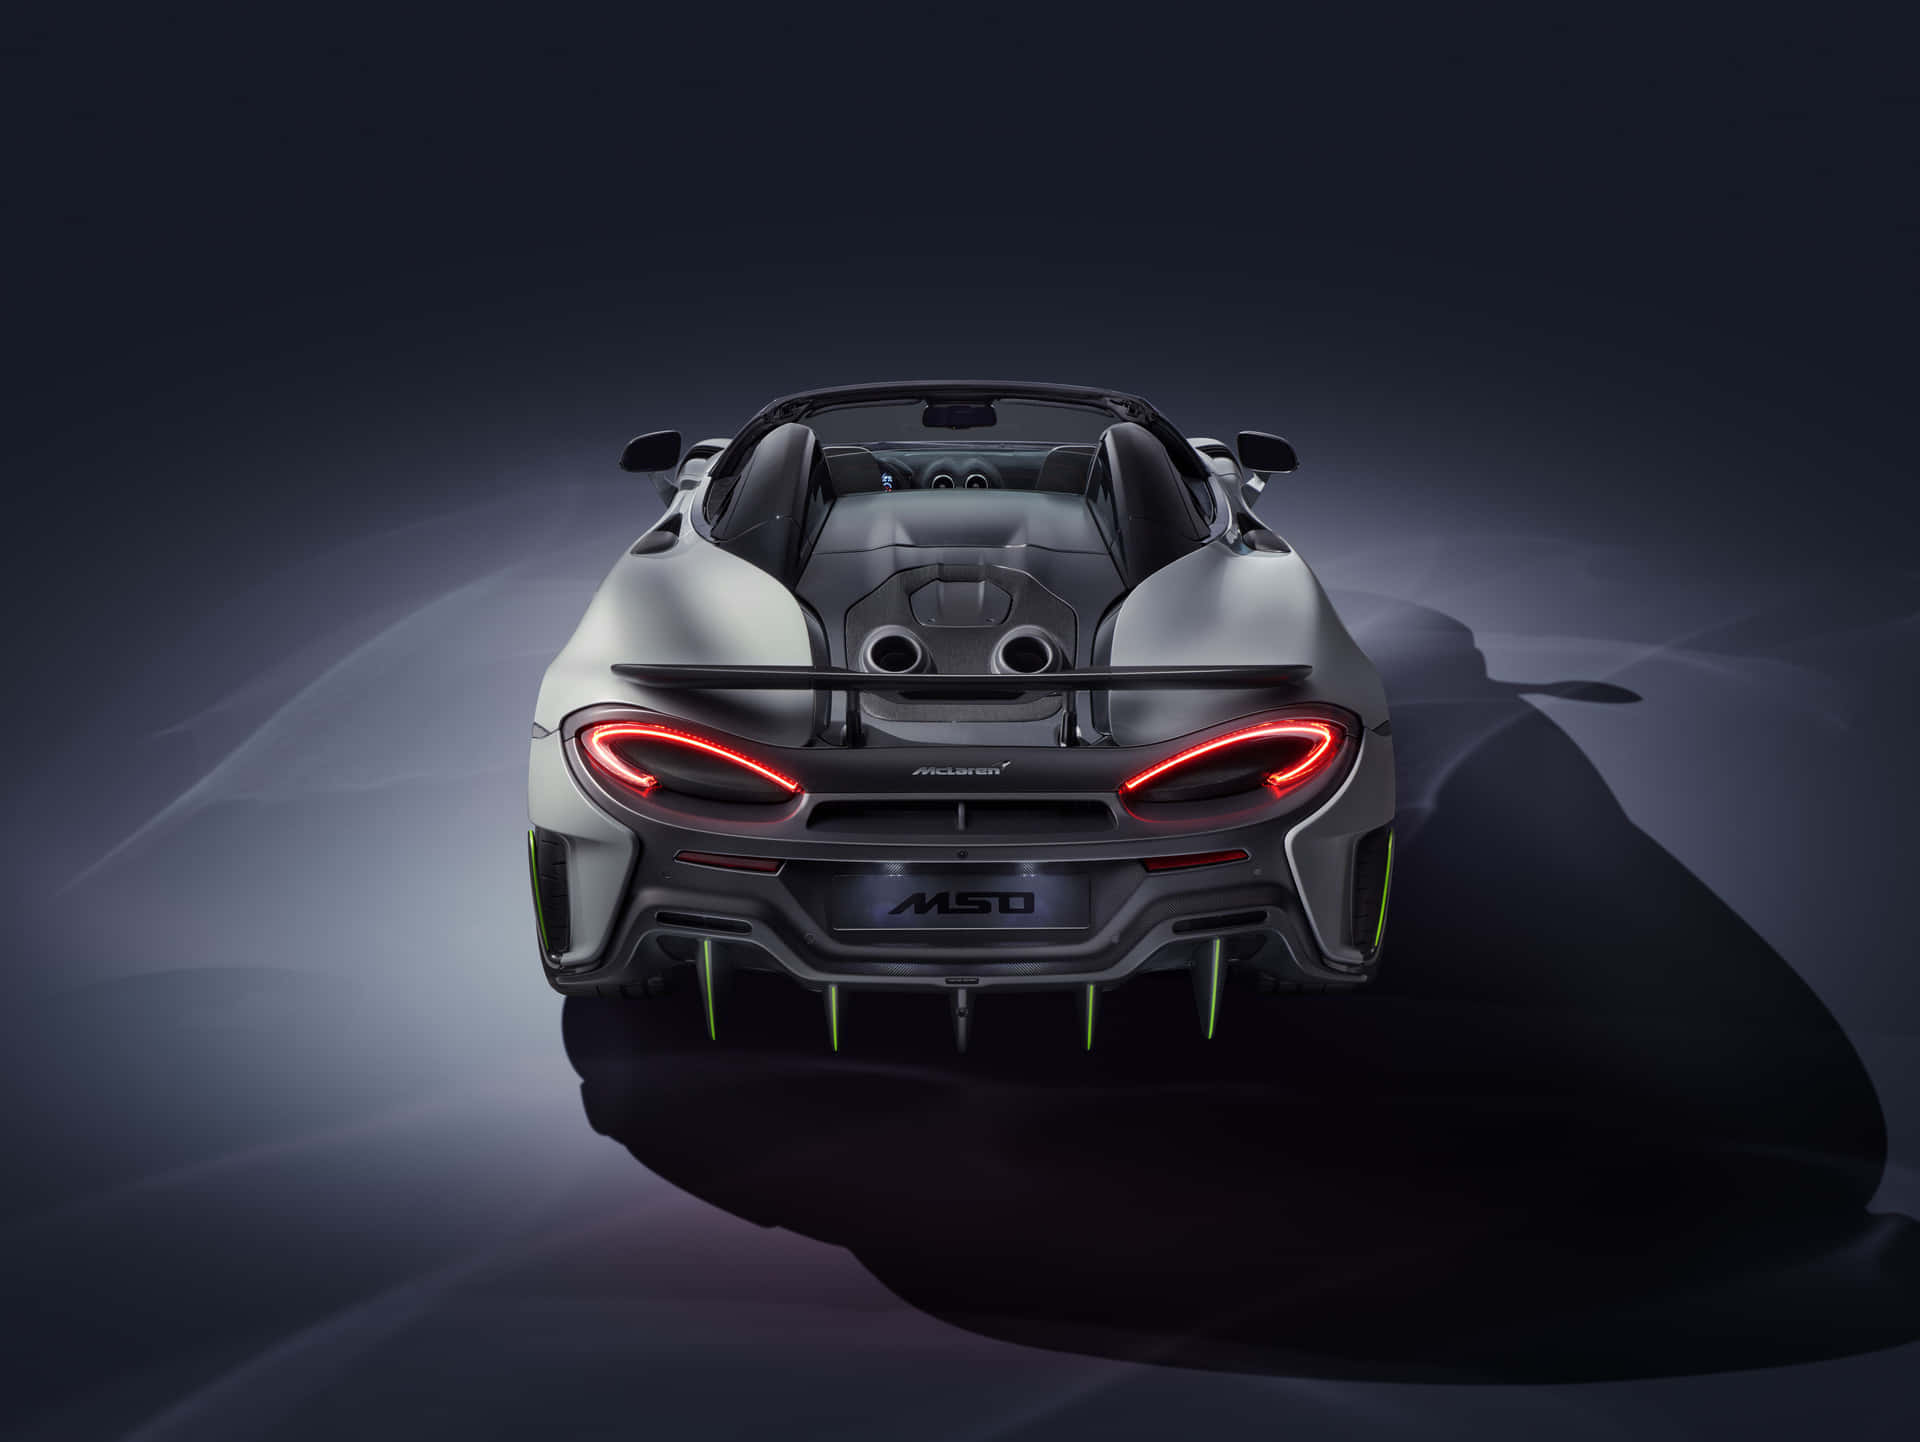 Stunning McLaren 600LT in action Wallpaper